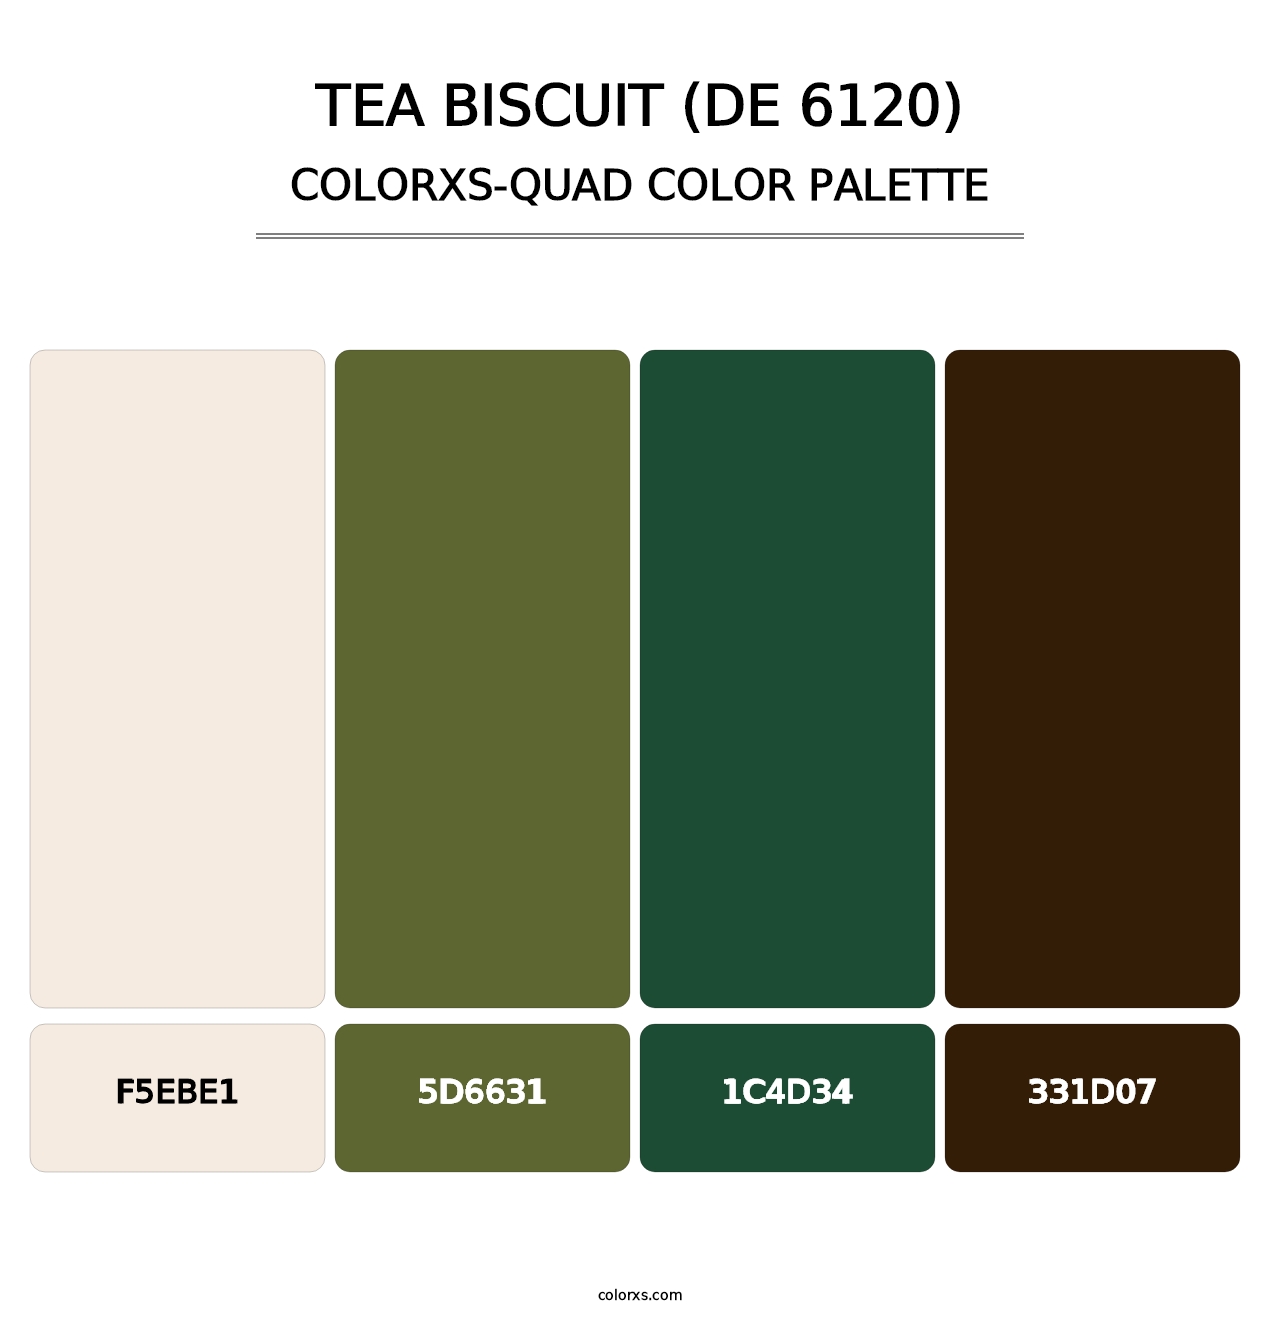 Tea Biscuit (DE 6120) - Colorxs Quad Palette